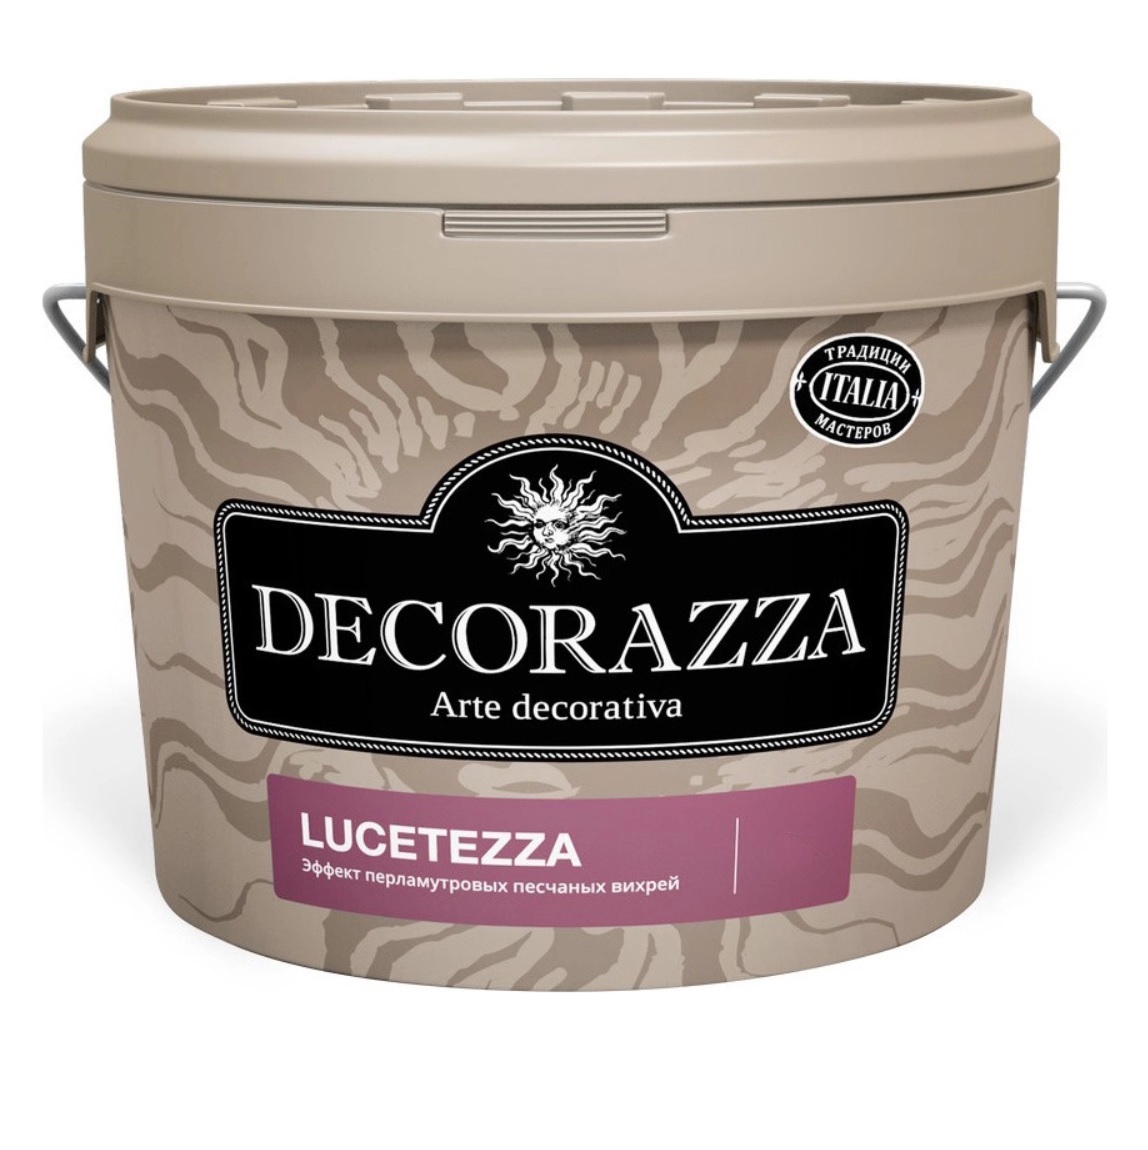 Декоративная краска Decorazza lucetezza база aluminium 5.0кг краска декоративная decorazza aretino 1 5 л